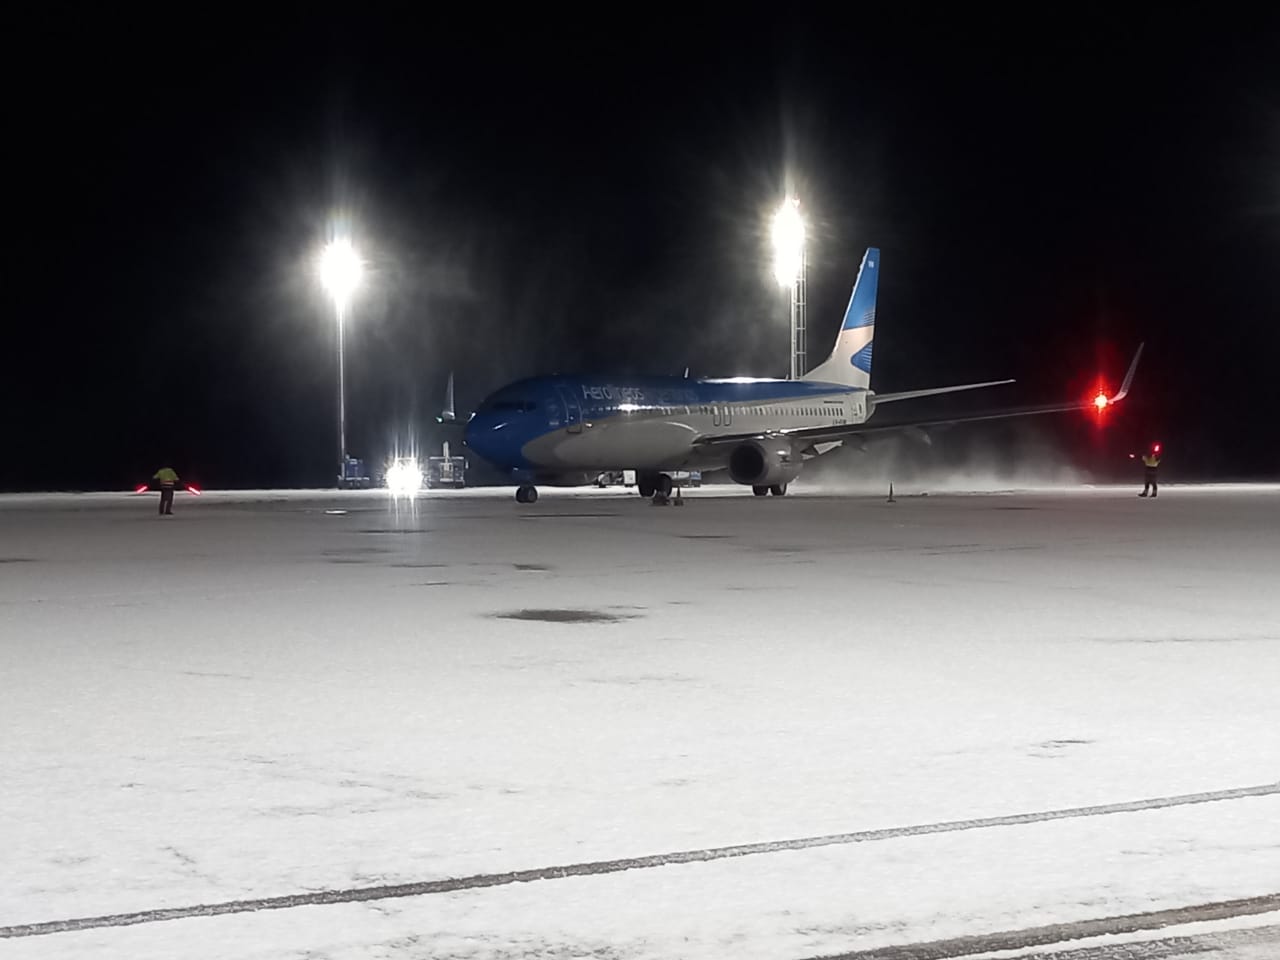 La llegada del vuelo estaba previsto para las 6:50 pero se retrasó una hora debido a las condiciones climáticas. Foto: Gentileza municipalidad de San Martín de los Andes. 